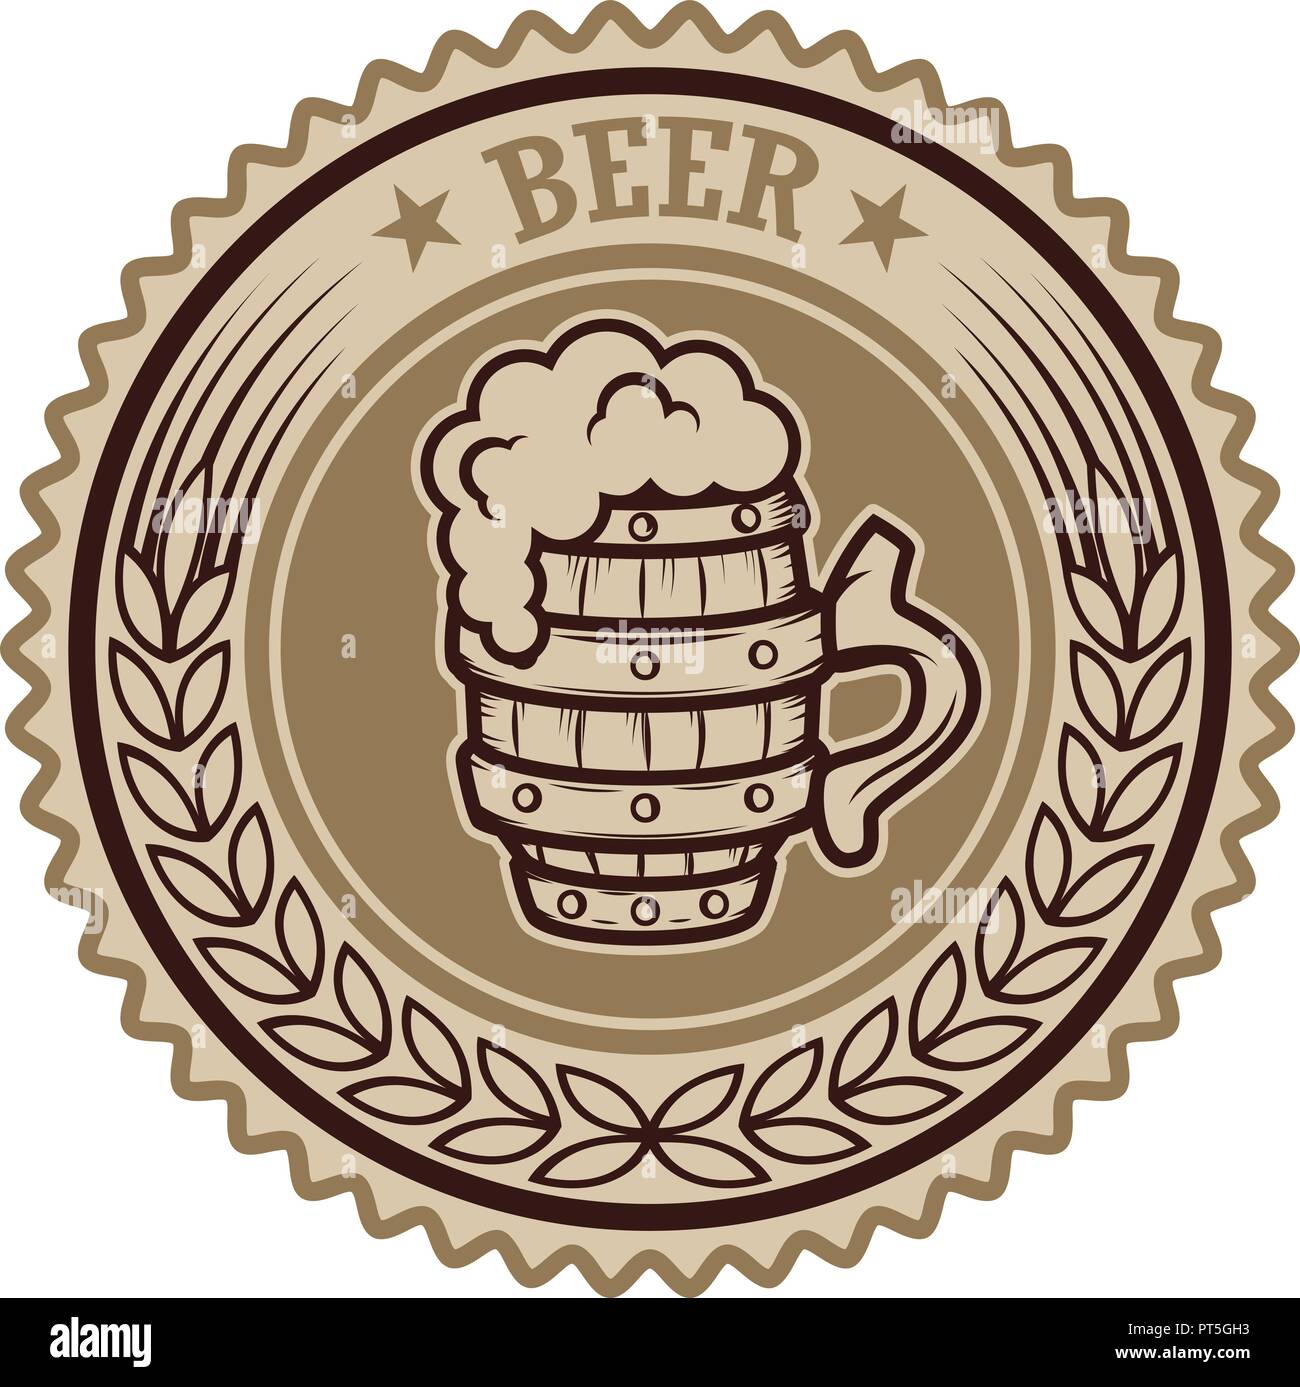 Vintage beer label. Design elements for logo, label, emblem, sign, menu ...